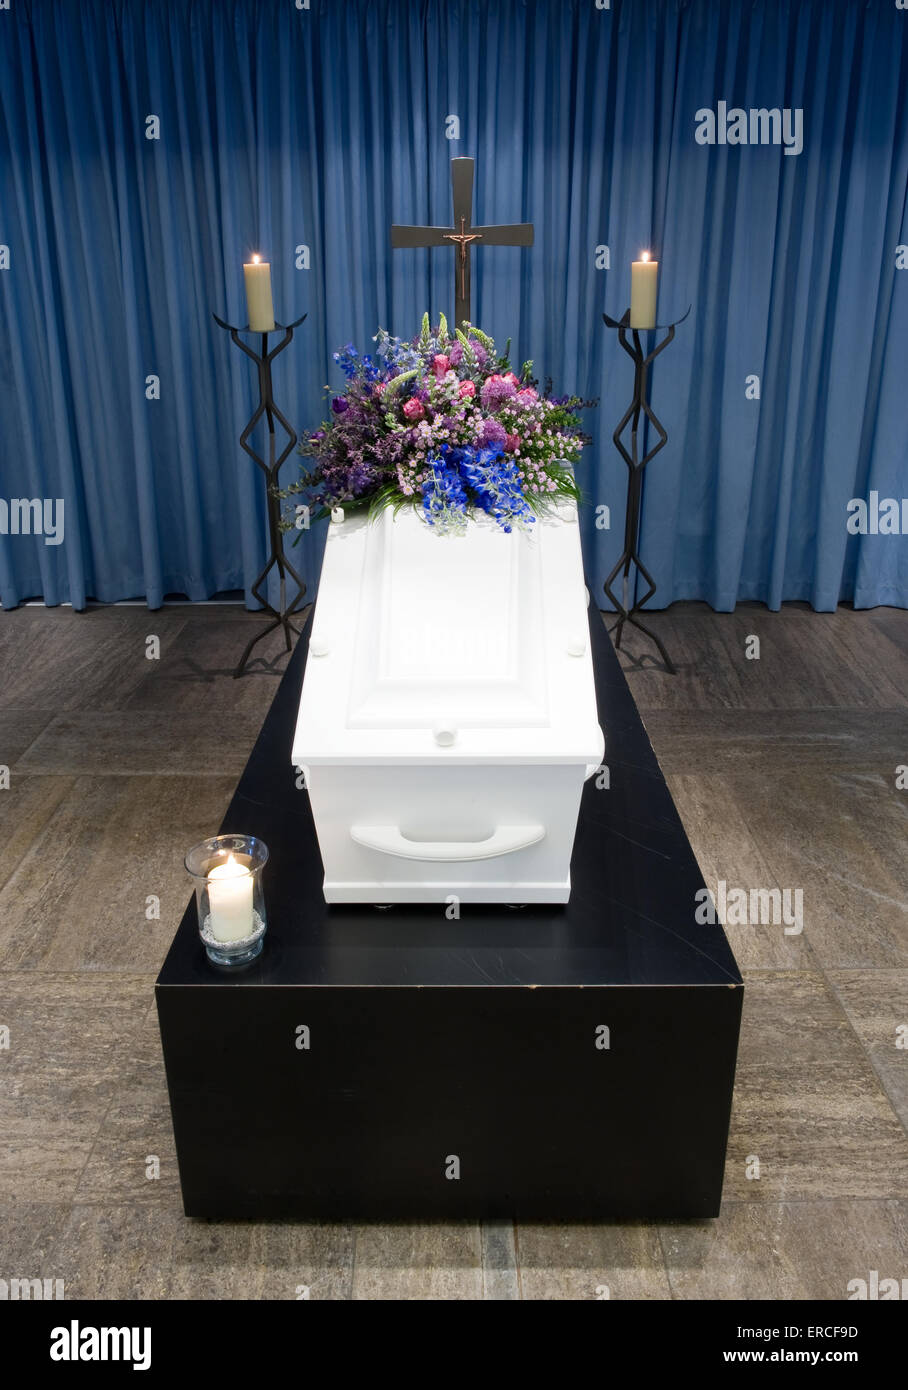 Un cercueil avec un arrangement floral dans une morgue avec deux bougies allumées et une croix Banque D'Images